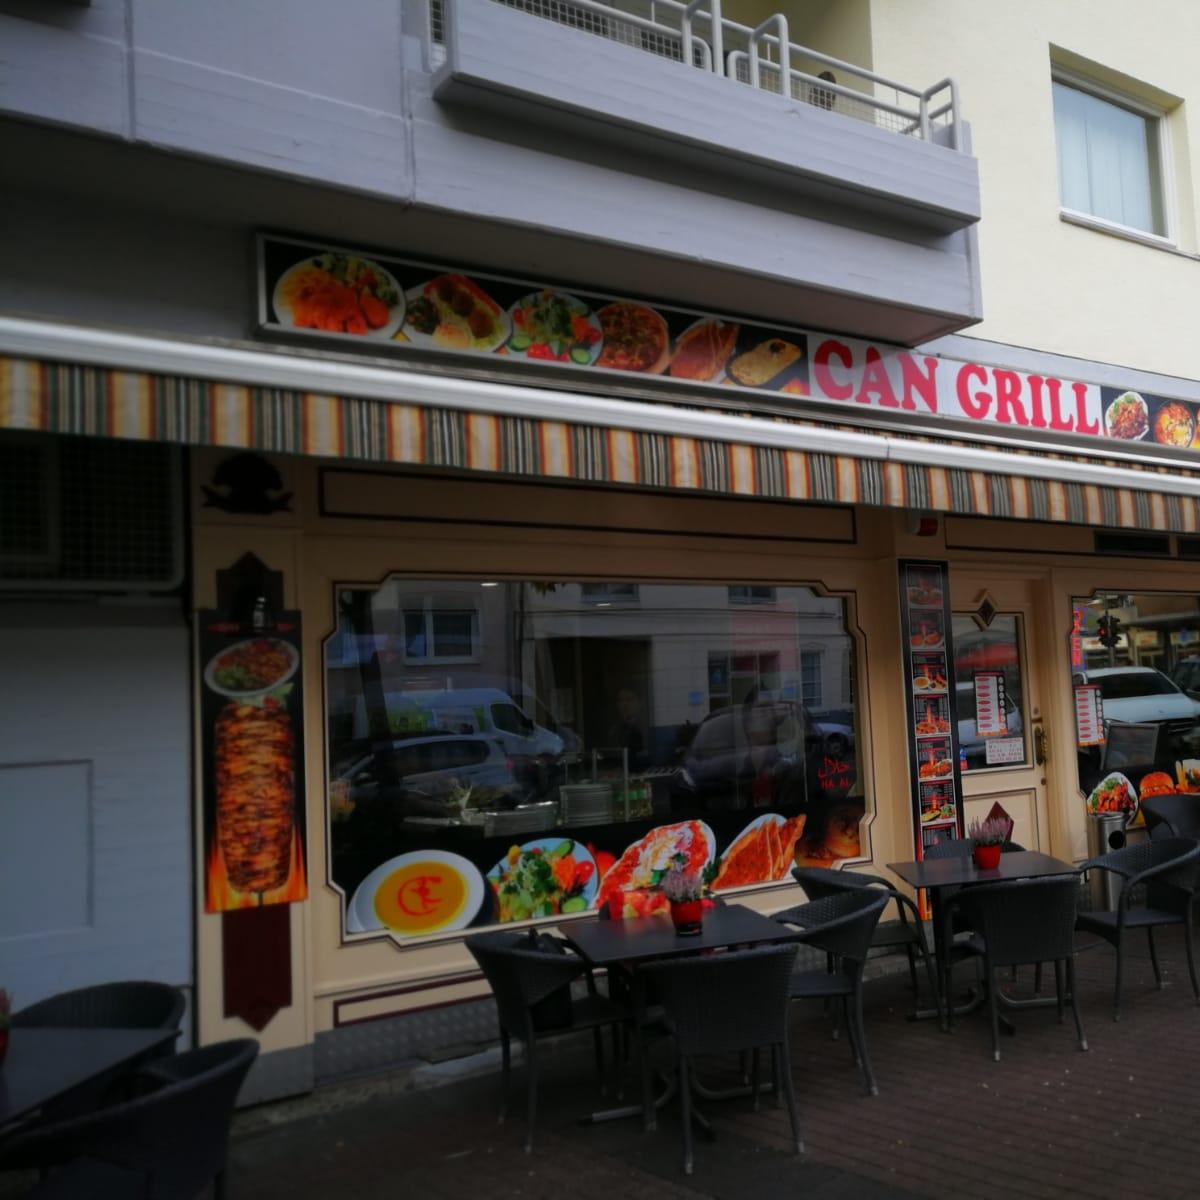 Restaurant "Can Grill Vingst-Köln" in Köln